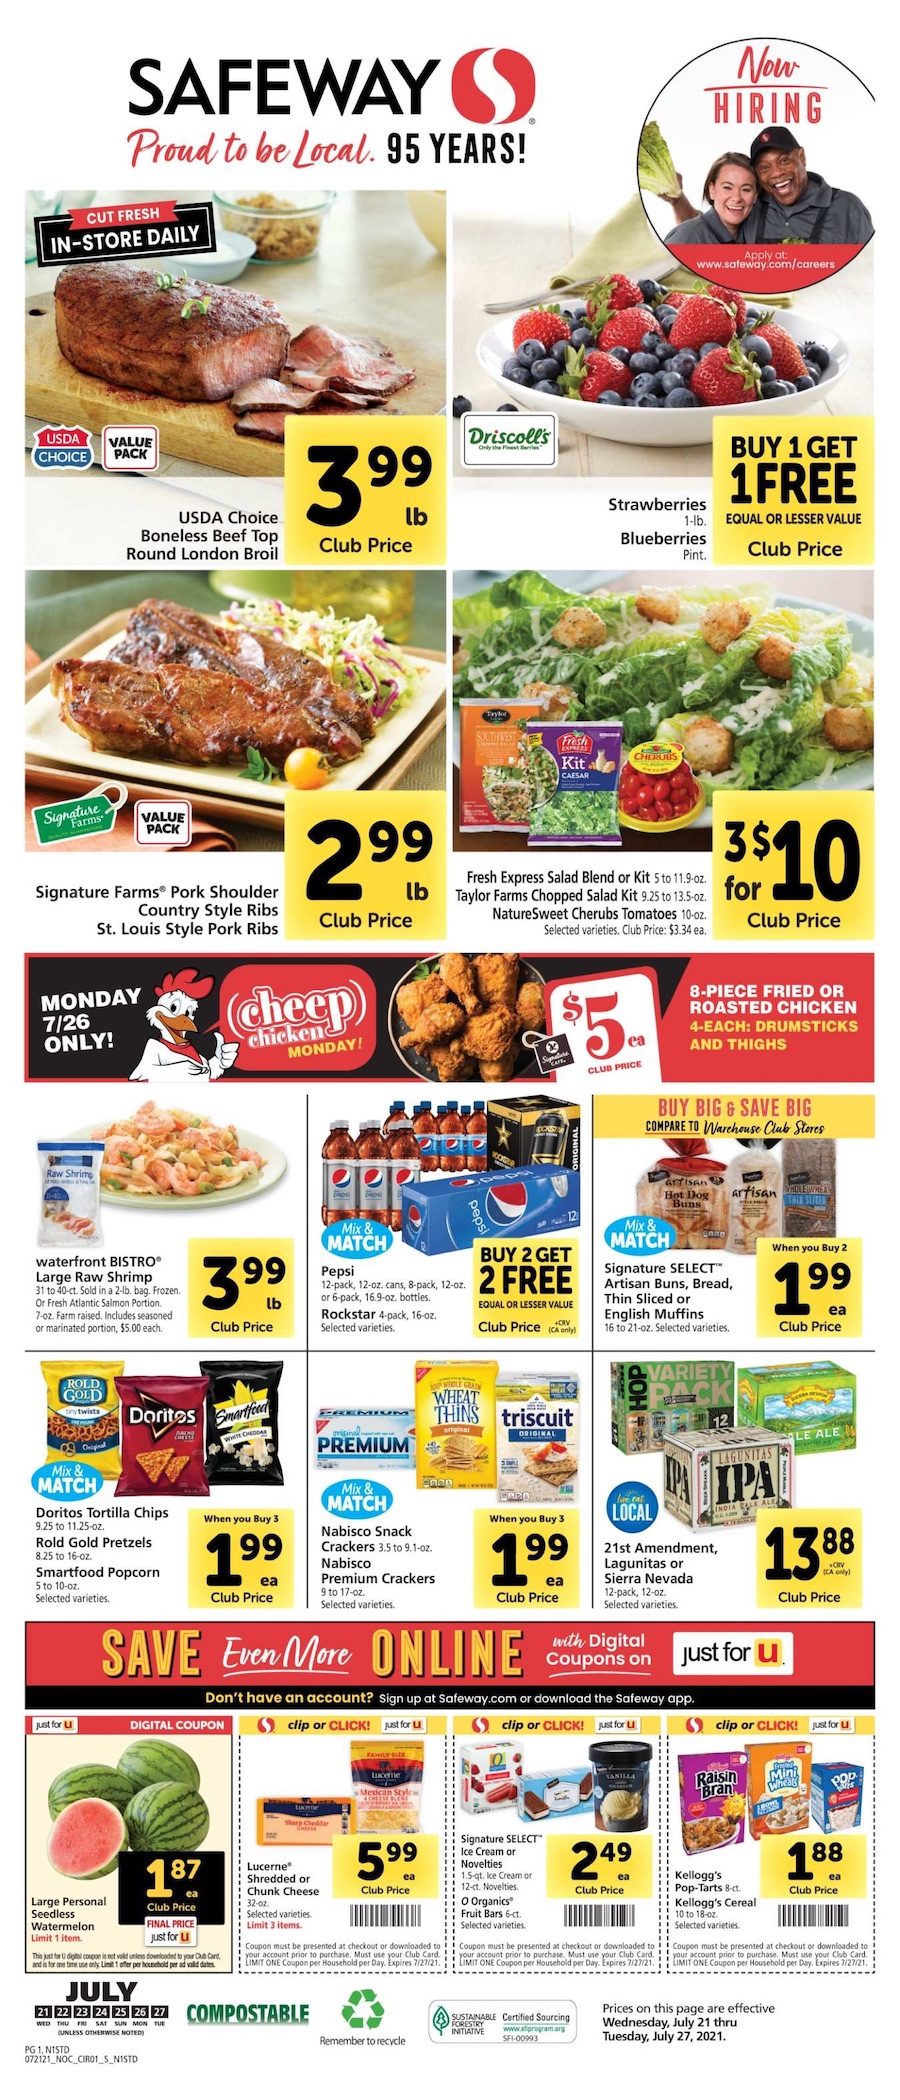 Safeway Weekly Ad Jul 21 27, 2021 WeeklyAds2